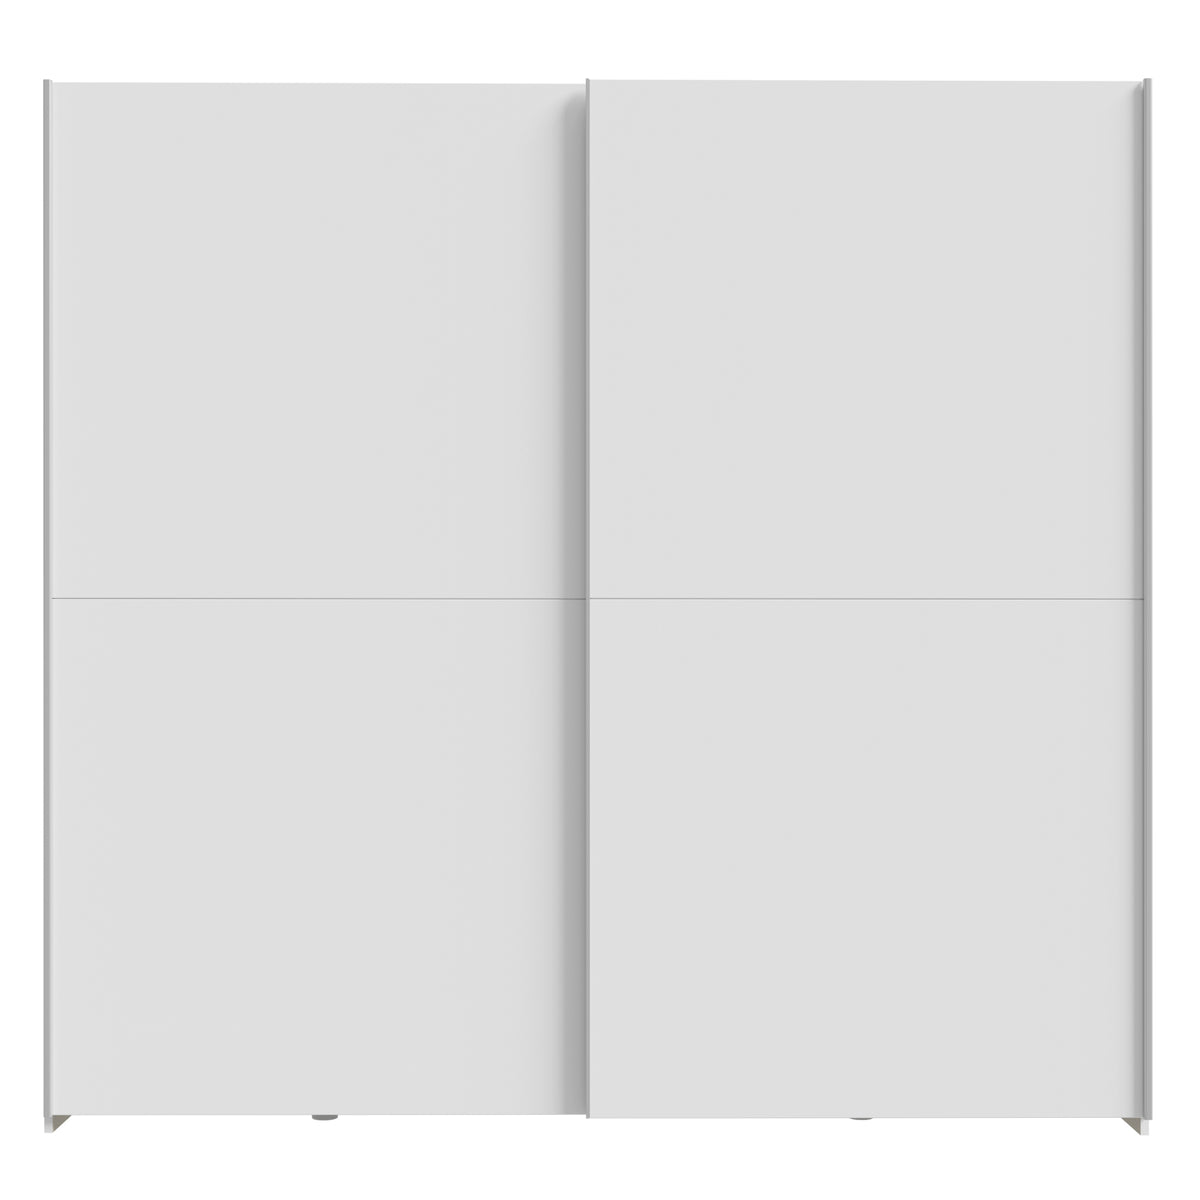 Šatní skříň Amy - 200,1x190,5x61,2 cm (bílá)